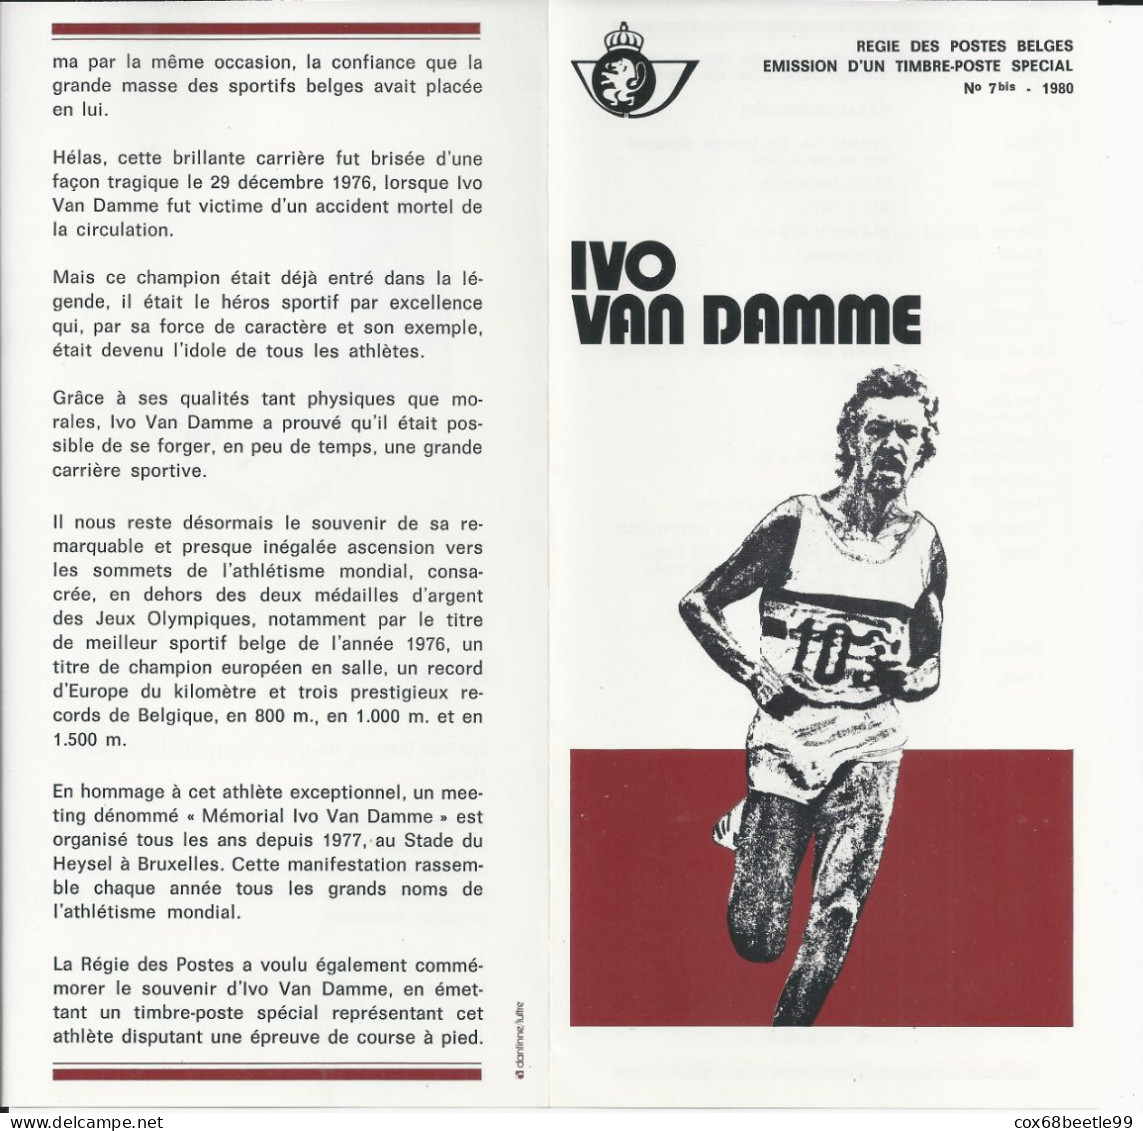 IVO VAN DAMME Belgique Feuillet De La Poste 1980 - 7 Bis FDC Cob 1974 03-05-1980 LIEGE Club Philatélique Le Perron - Folletos De La Oficina De Correos